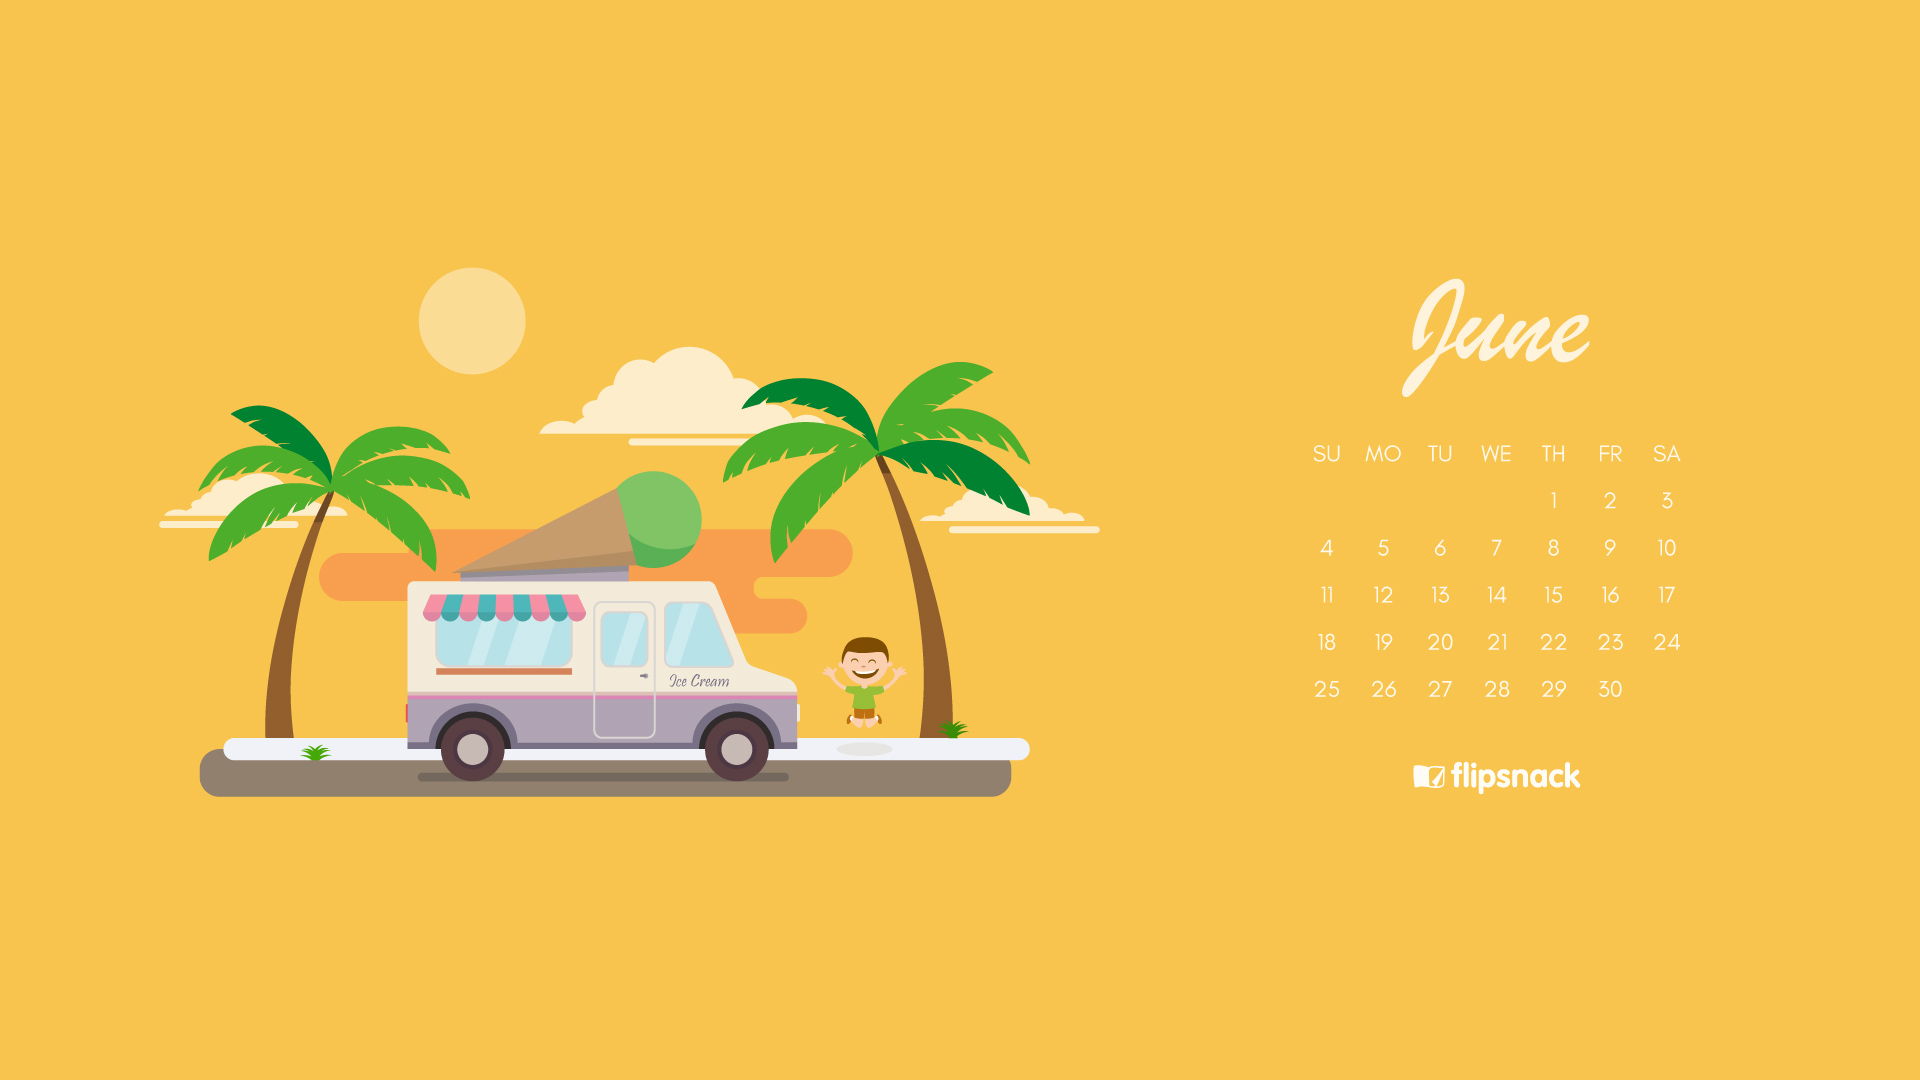 June 2017 Wallpaper Desktop Is Cool Wallpapers - June 2019 Desktop Calendar , HD Wallpaper & Backgrounds